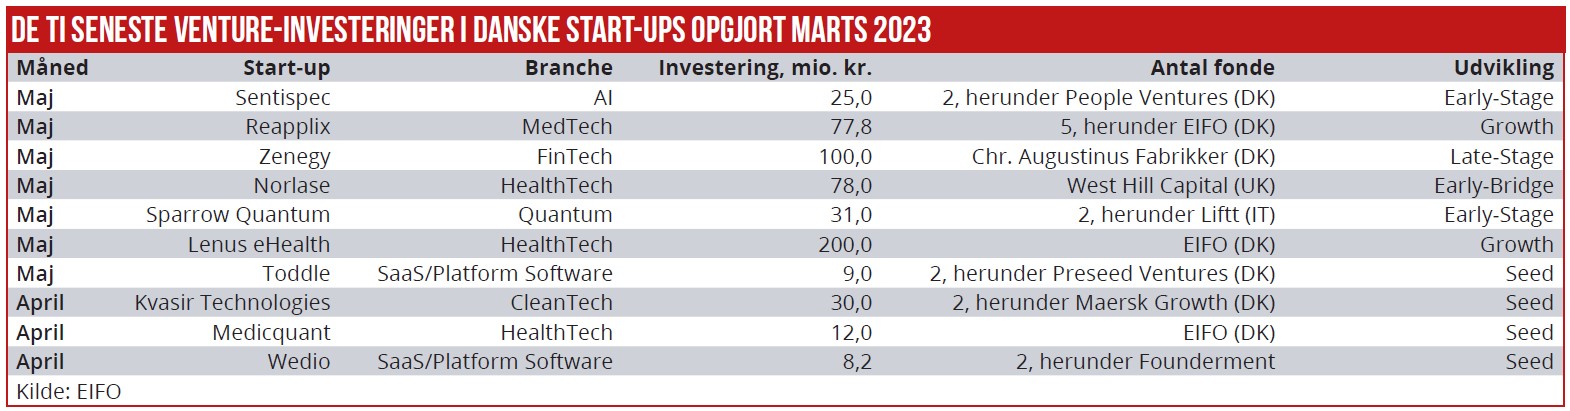 De ti seneste venture-investeringer i danske start-ups opgjort marts 2023